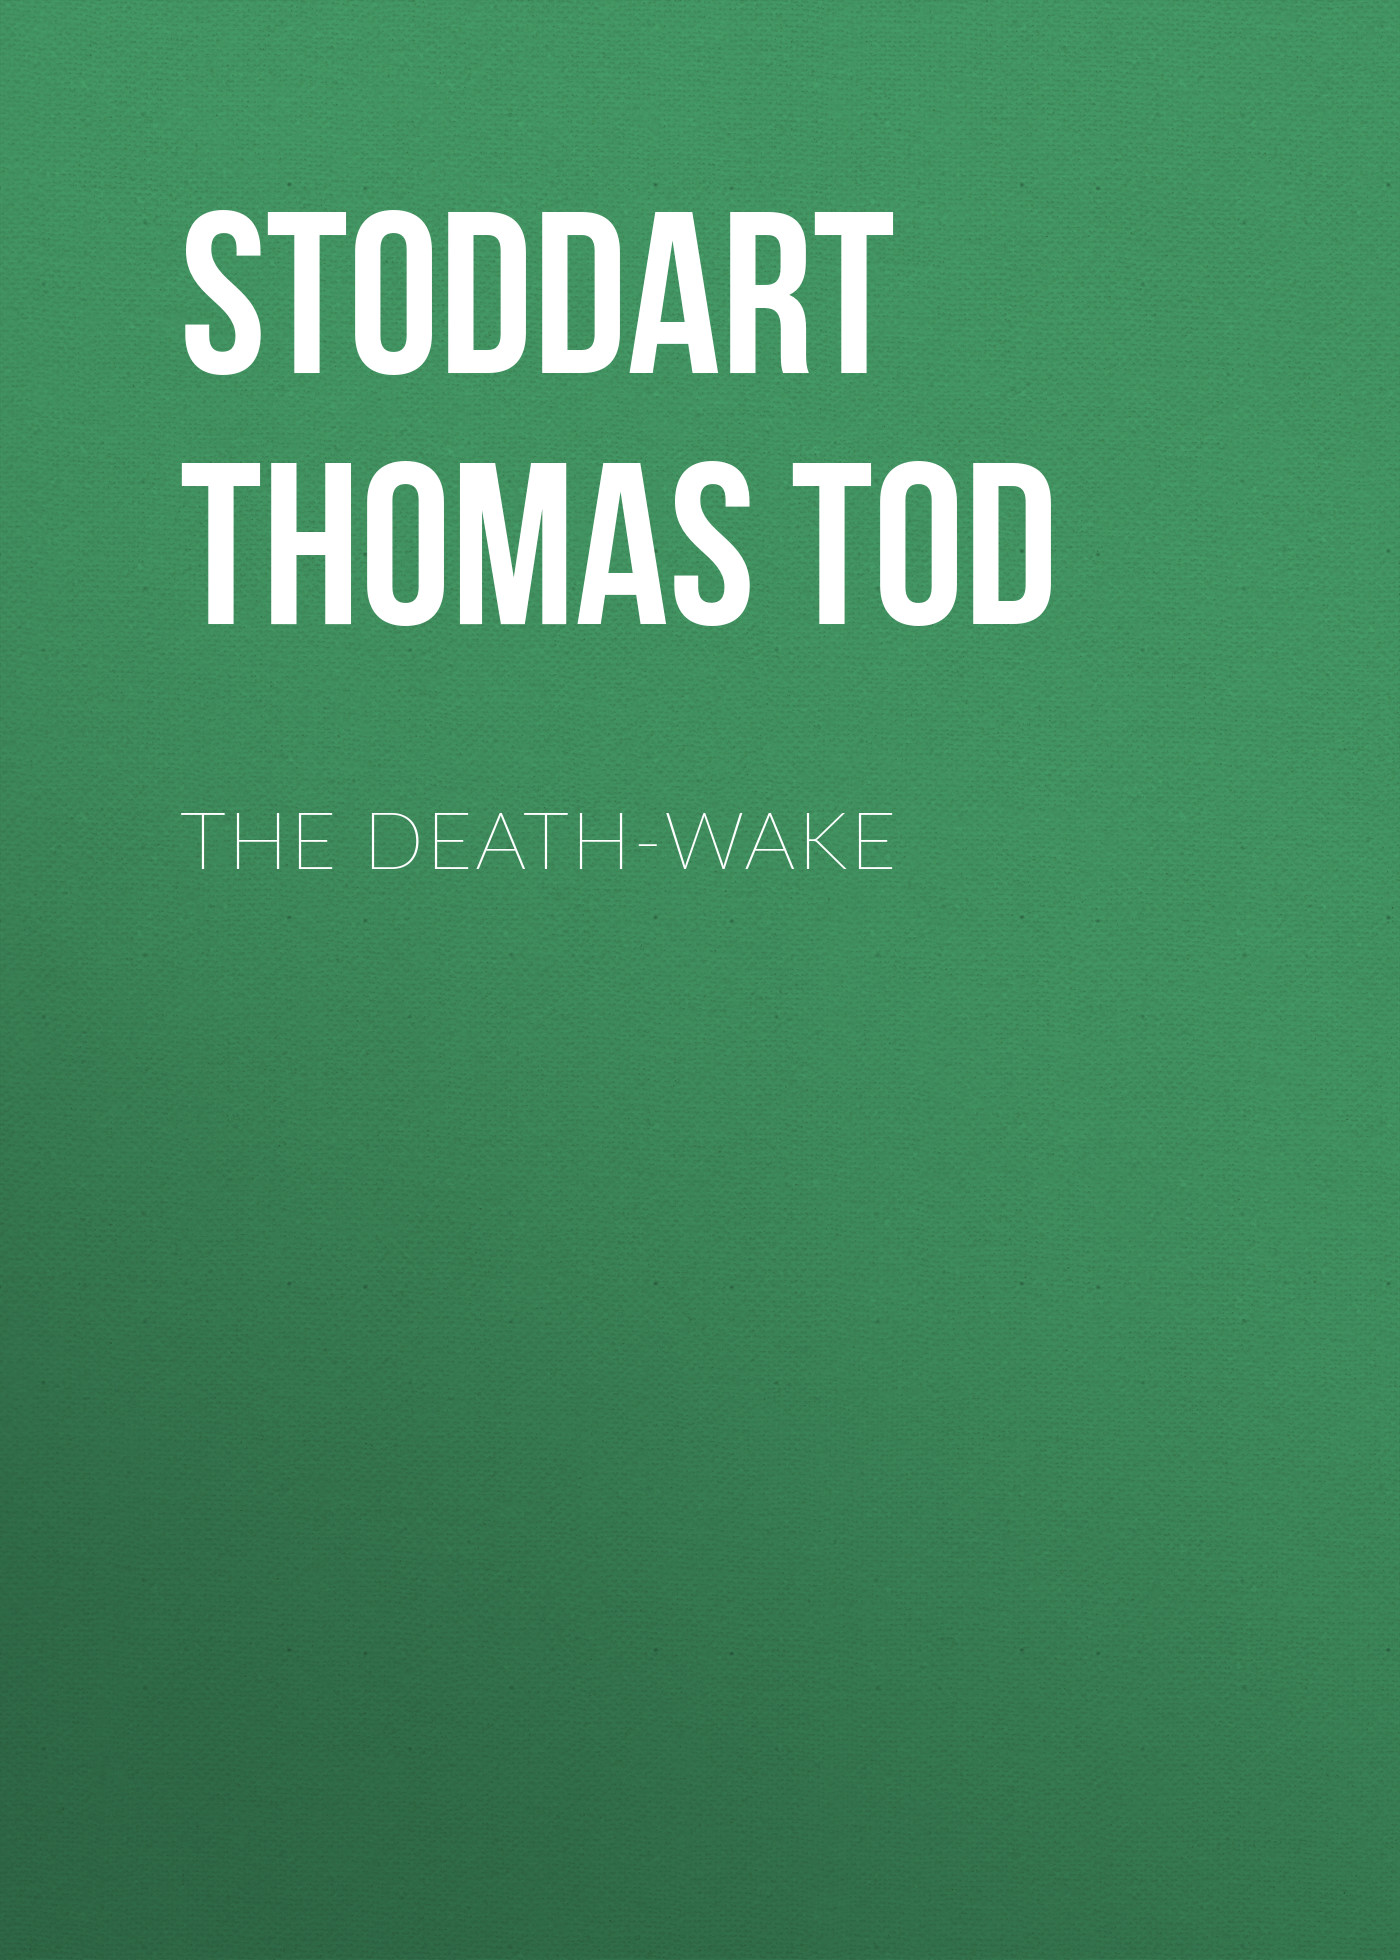 Stoddart Thomas Tod The Death-Wake